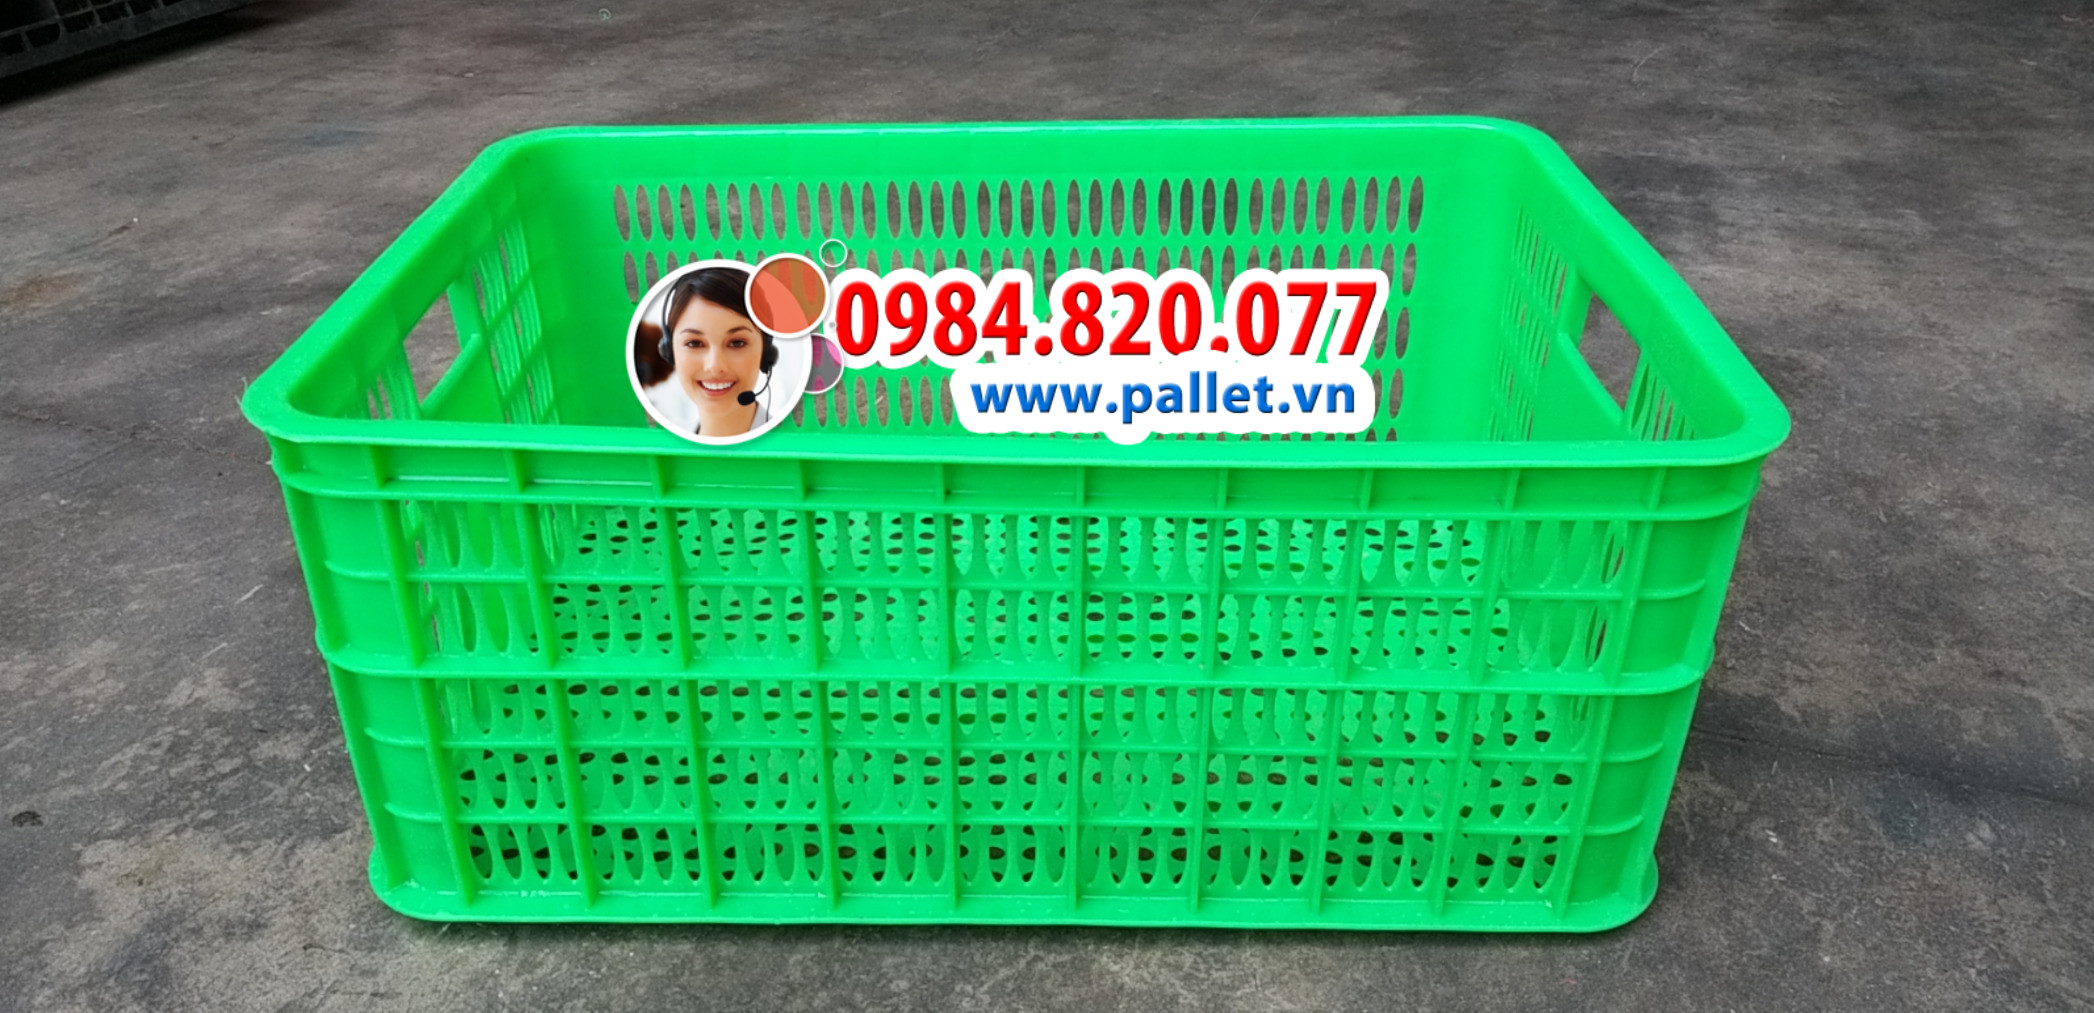 Rổ nhựa hở 2 tấc 5 giá rẻ - Thùng nhựa Việt Nhật